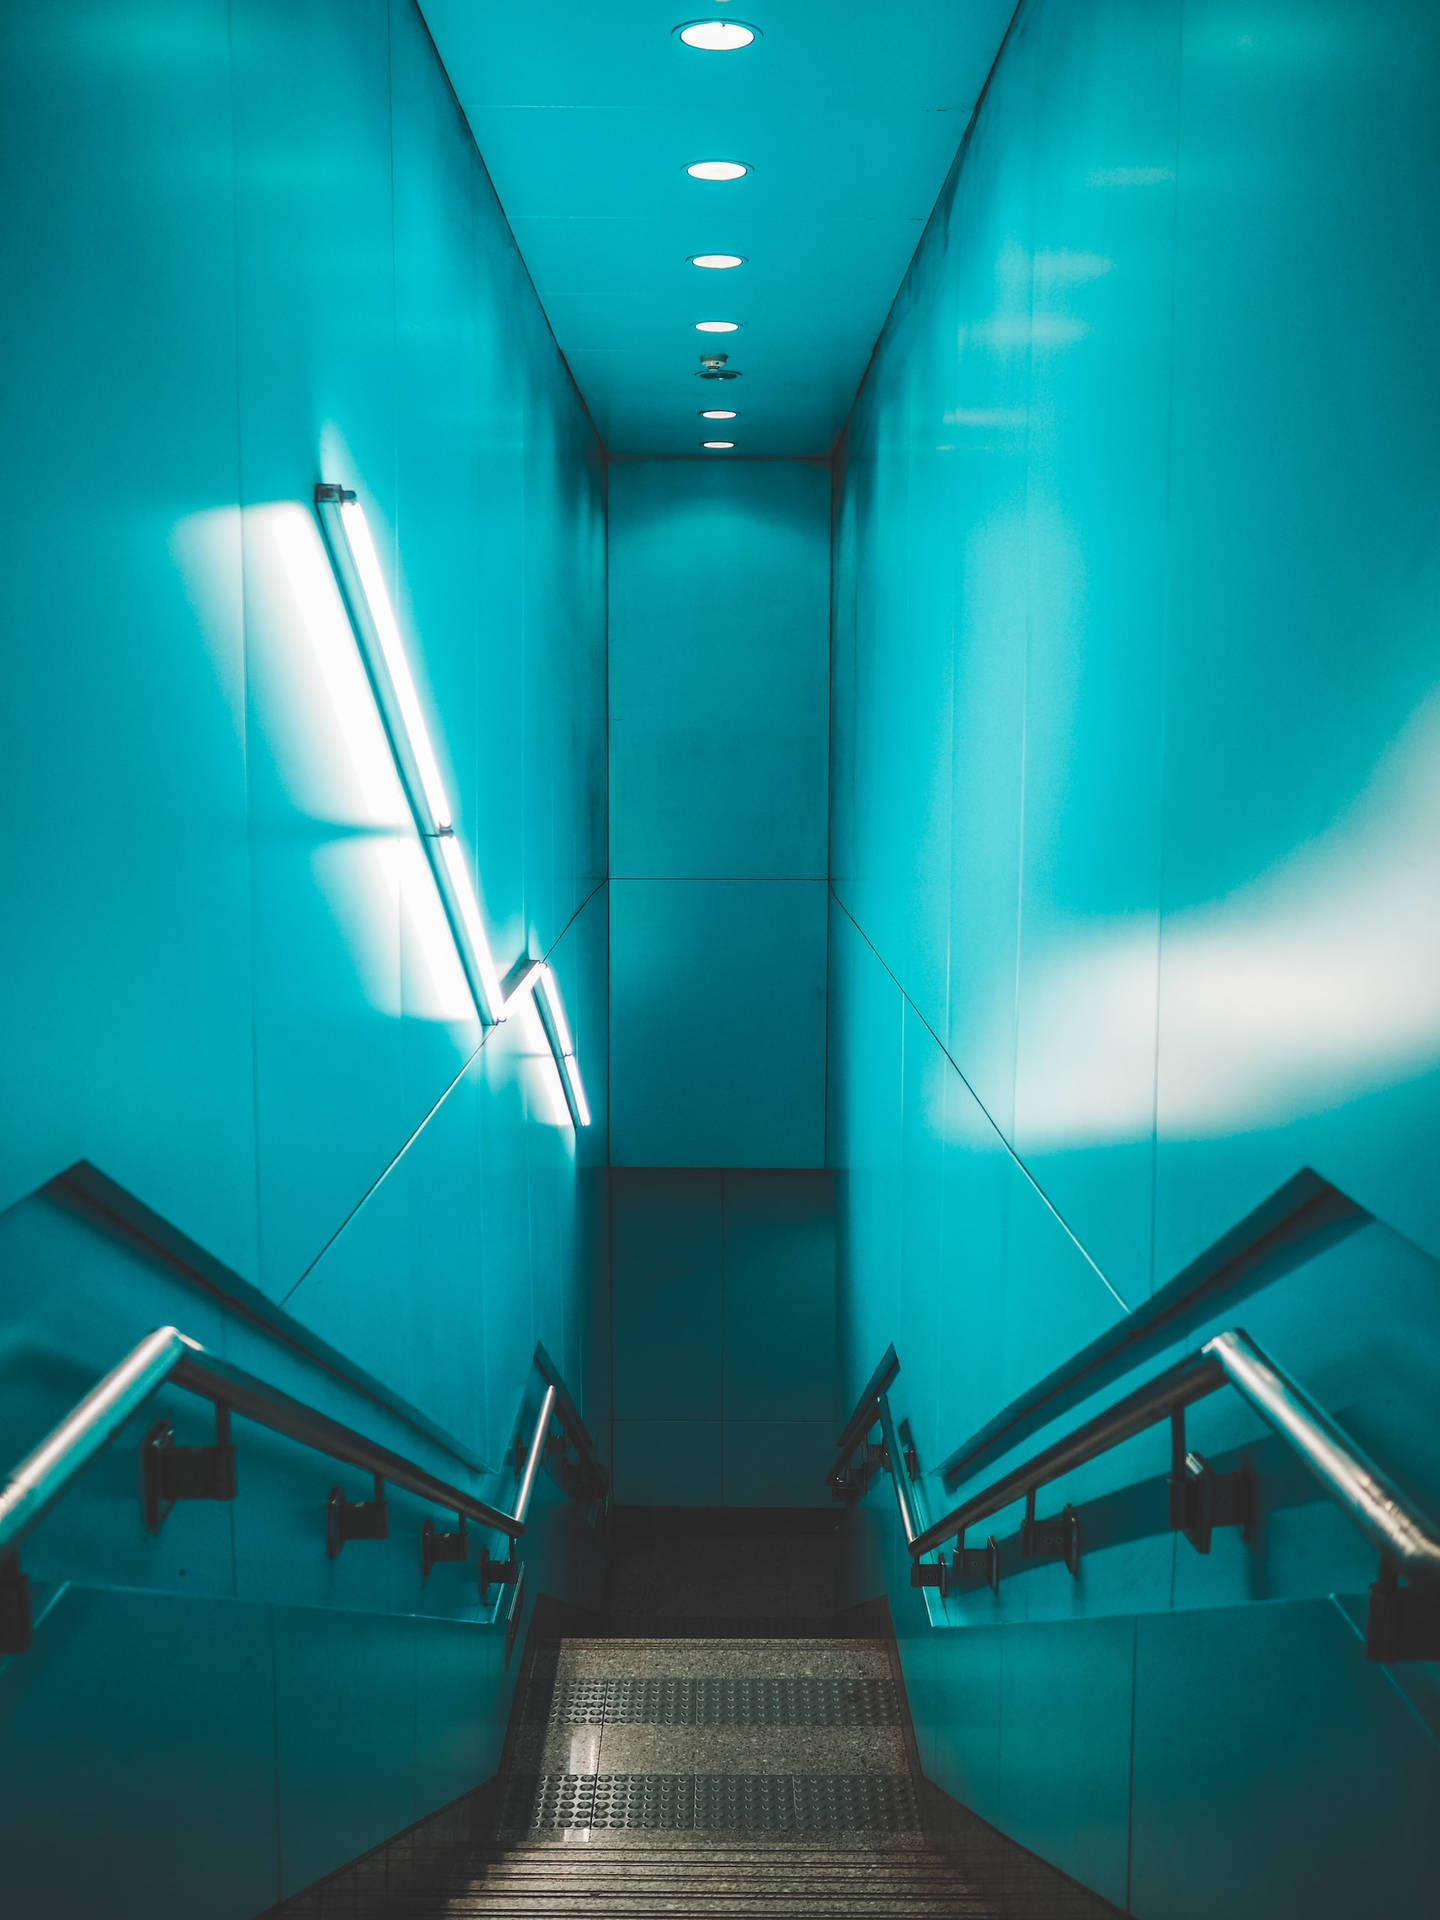 Luzde Escalera Azul Neón Fondo de pantalla